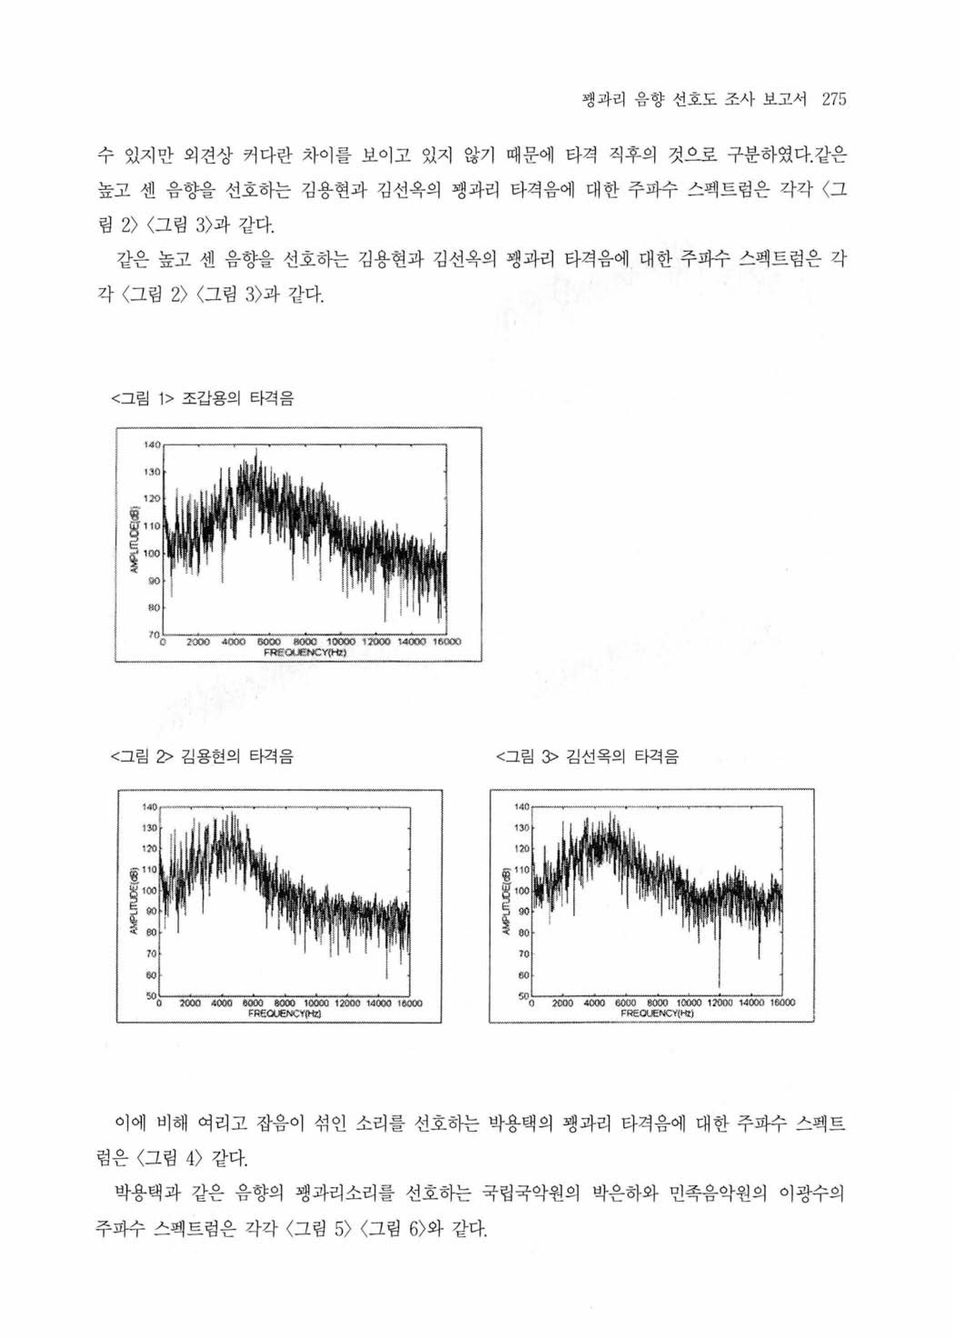 같은 높고 센 음향을 선호히는 김용현과 김선옥의 팽과리 타격음에 대한 주파수 스펙트럼은 각 각 그림 2) <그림 3 )과 같다.